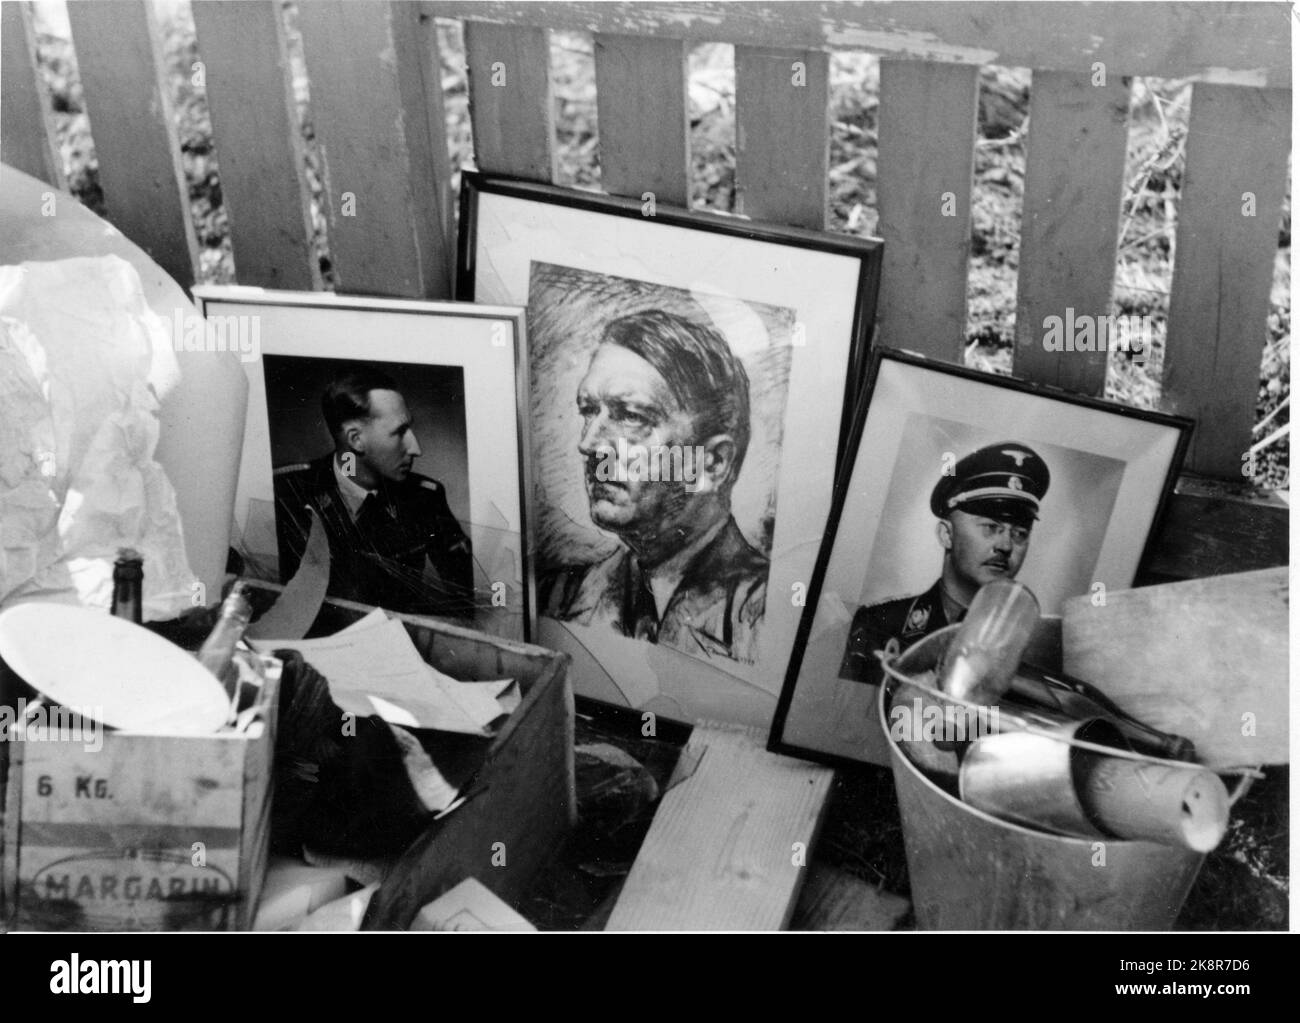 Tromsø 1945: Le Giornate della Pace 1945 maggio. Le immagini di Hitler e di altri leader tedeschi sono gettate sul mucchio di scarti. Foto: Winsnes / NTB / NTB Foto Stock